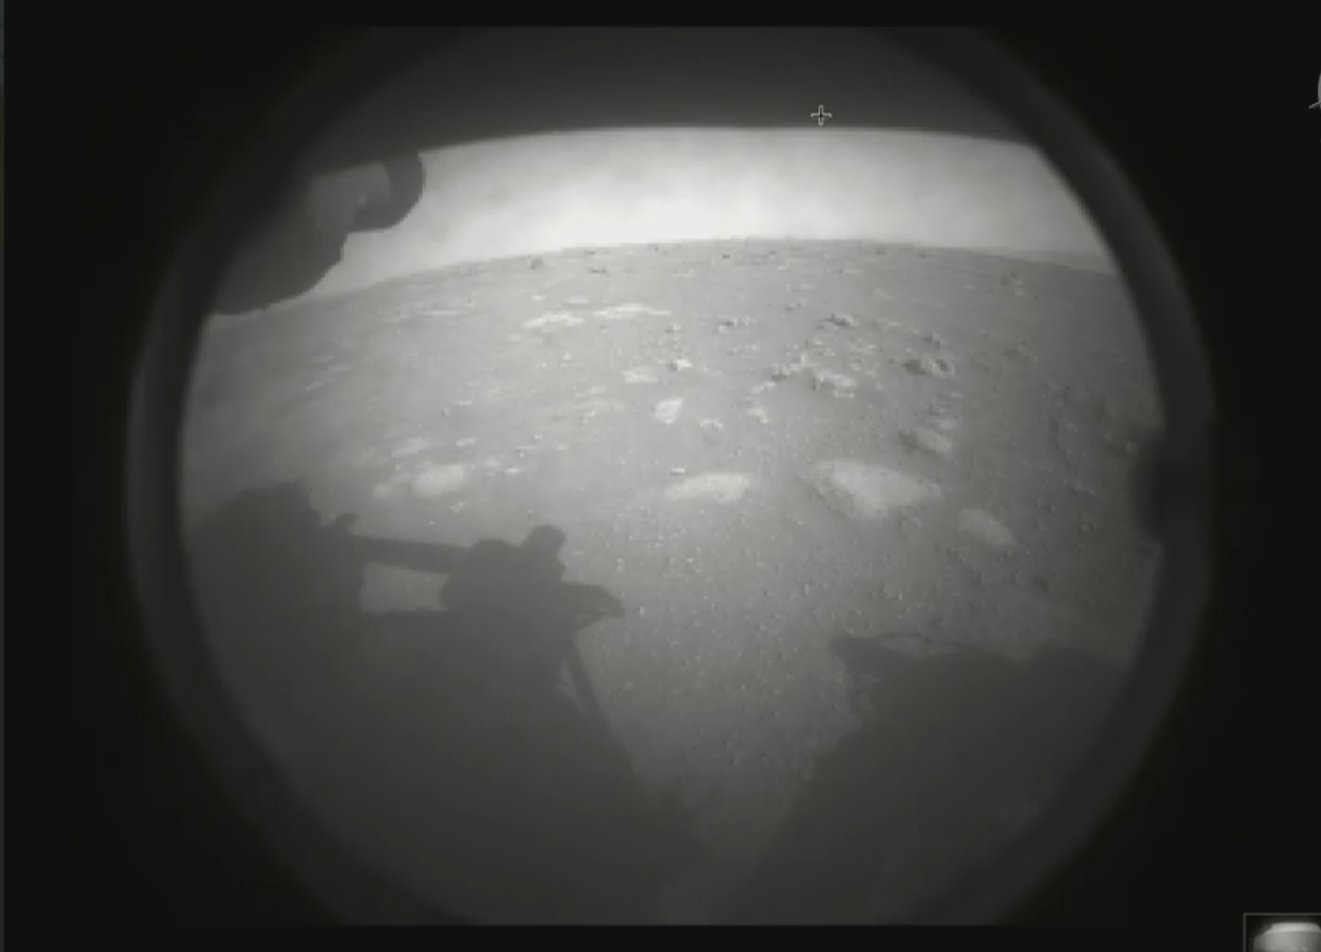 Ровер «Персеверанс» сел на поверхность Марса и прислал первые снимки - 1 - изображение